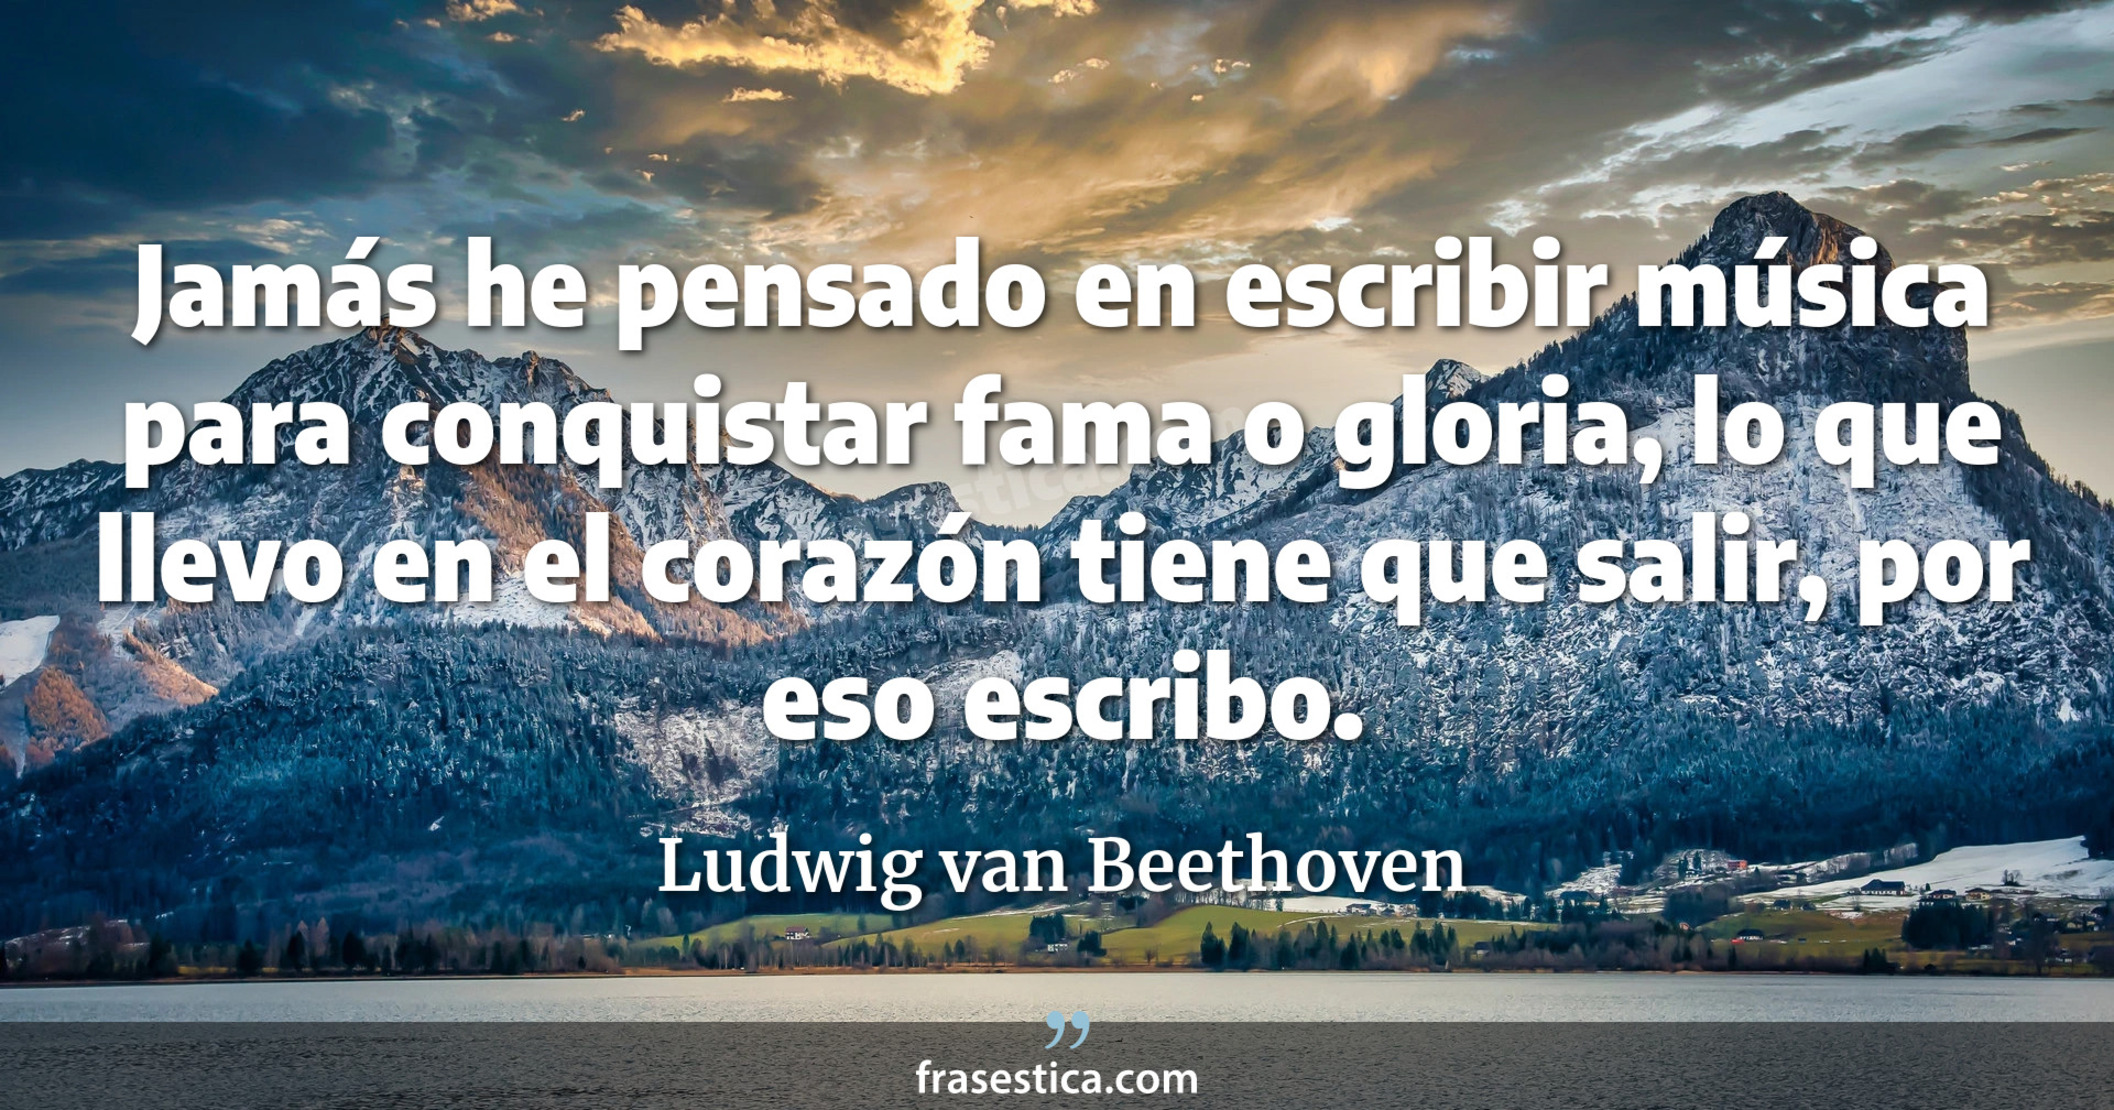 Jamás he pensado en escribir música para conquistar fama o gloria, lo que llevo en el corazón tiene que salir, por eso escribo. - Ludwig van Beethoven